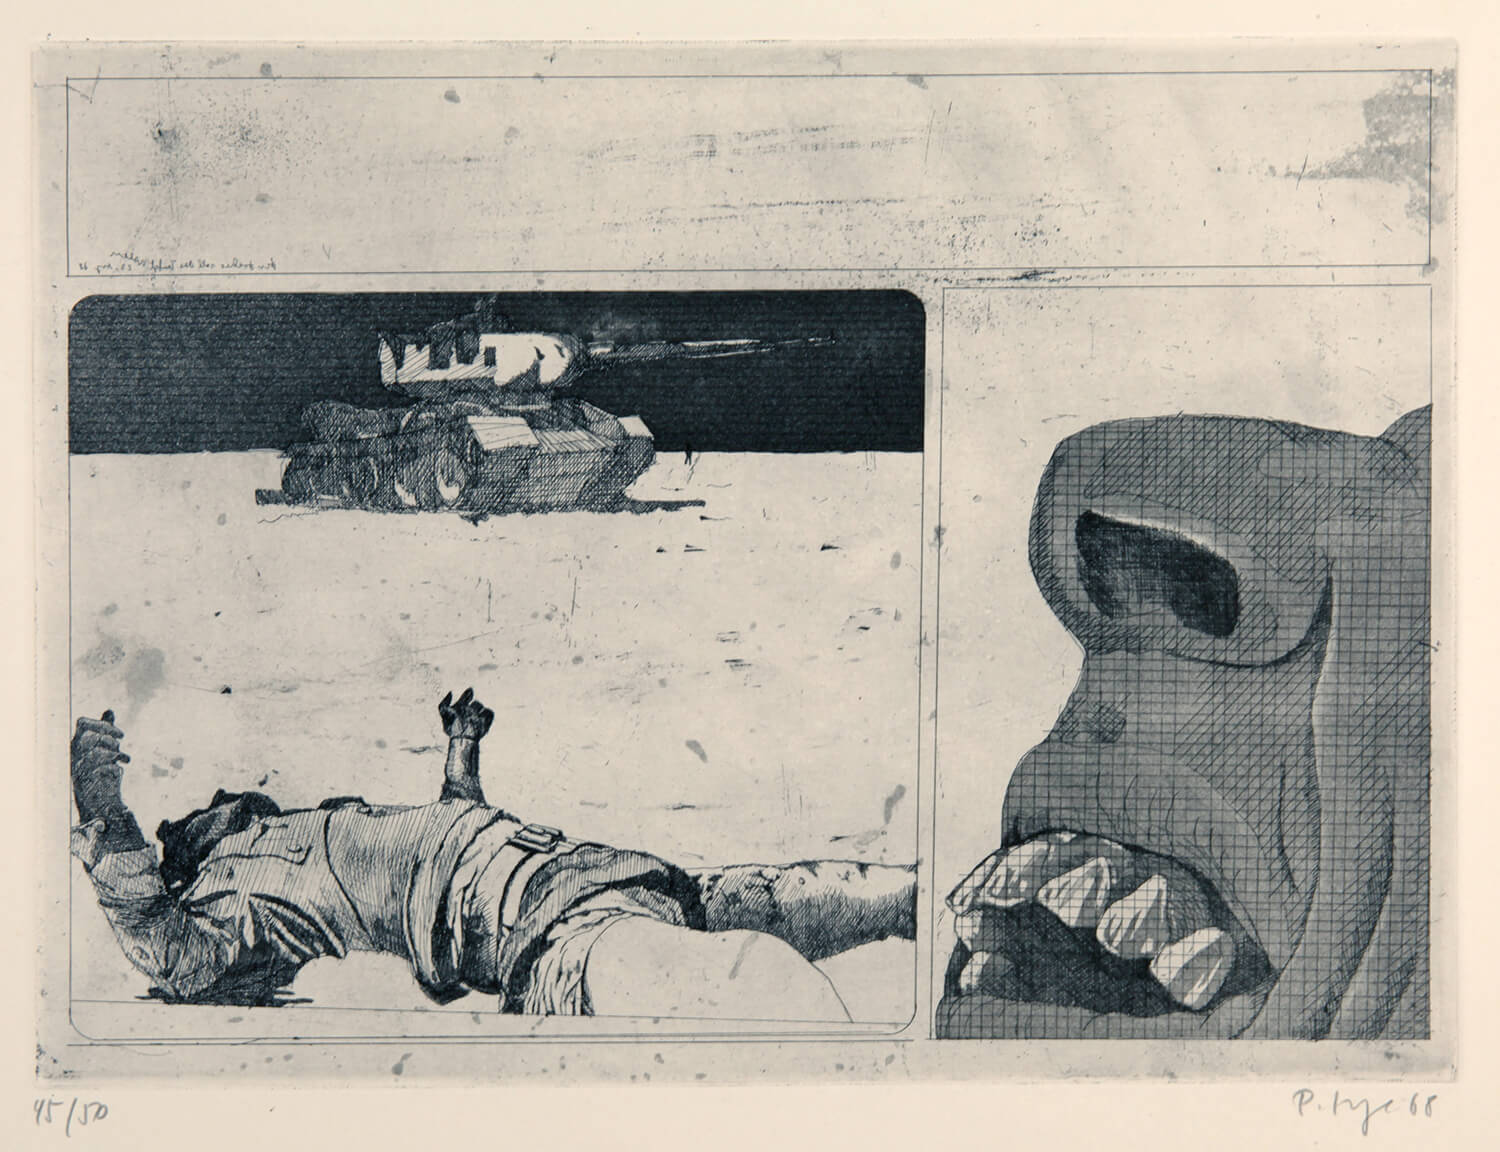 Peter Sorge, Sinai, 1968, Radierung, Auflage: 50, Bild: 29 x 39,6 cm, Blatt: 47,7 x 64 cm